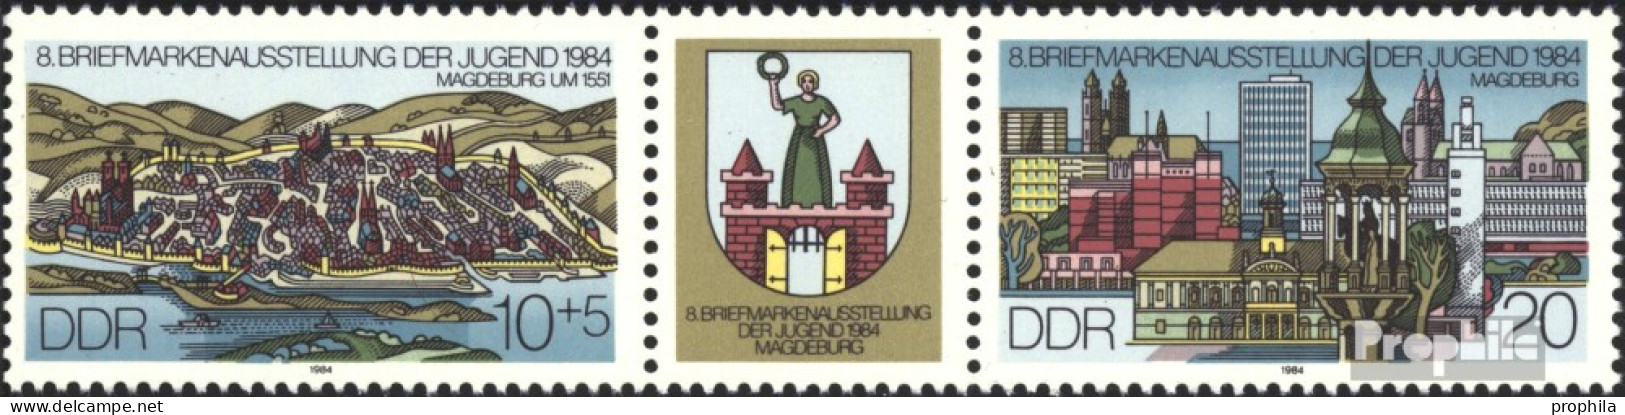 DDR WZd609 (kompl.Ausg.) (2903-2904 Als Dreierstreifen) Postfrisch 1984 Briefmarkenausstellung - Zusammendrucke